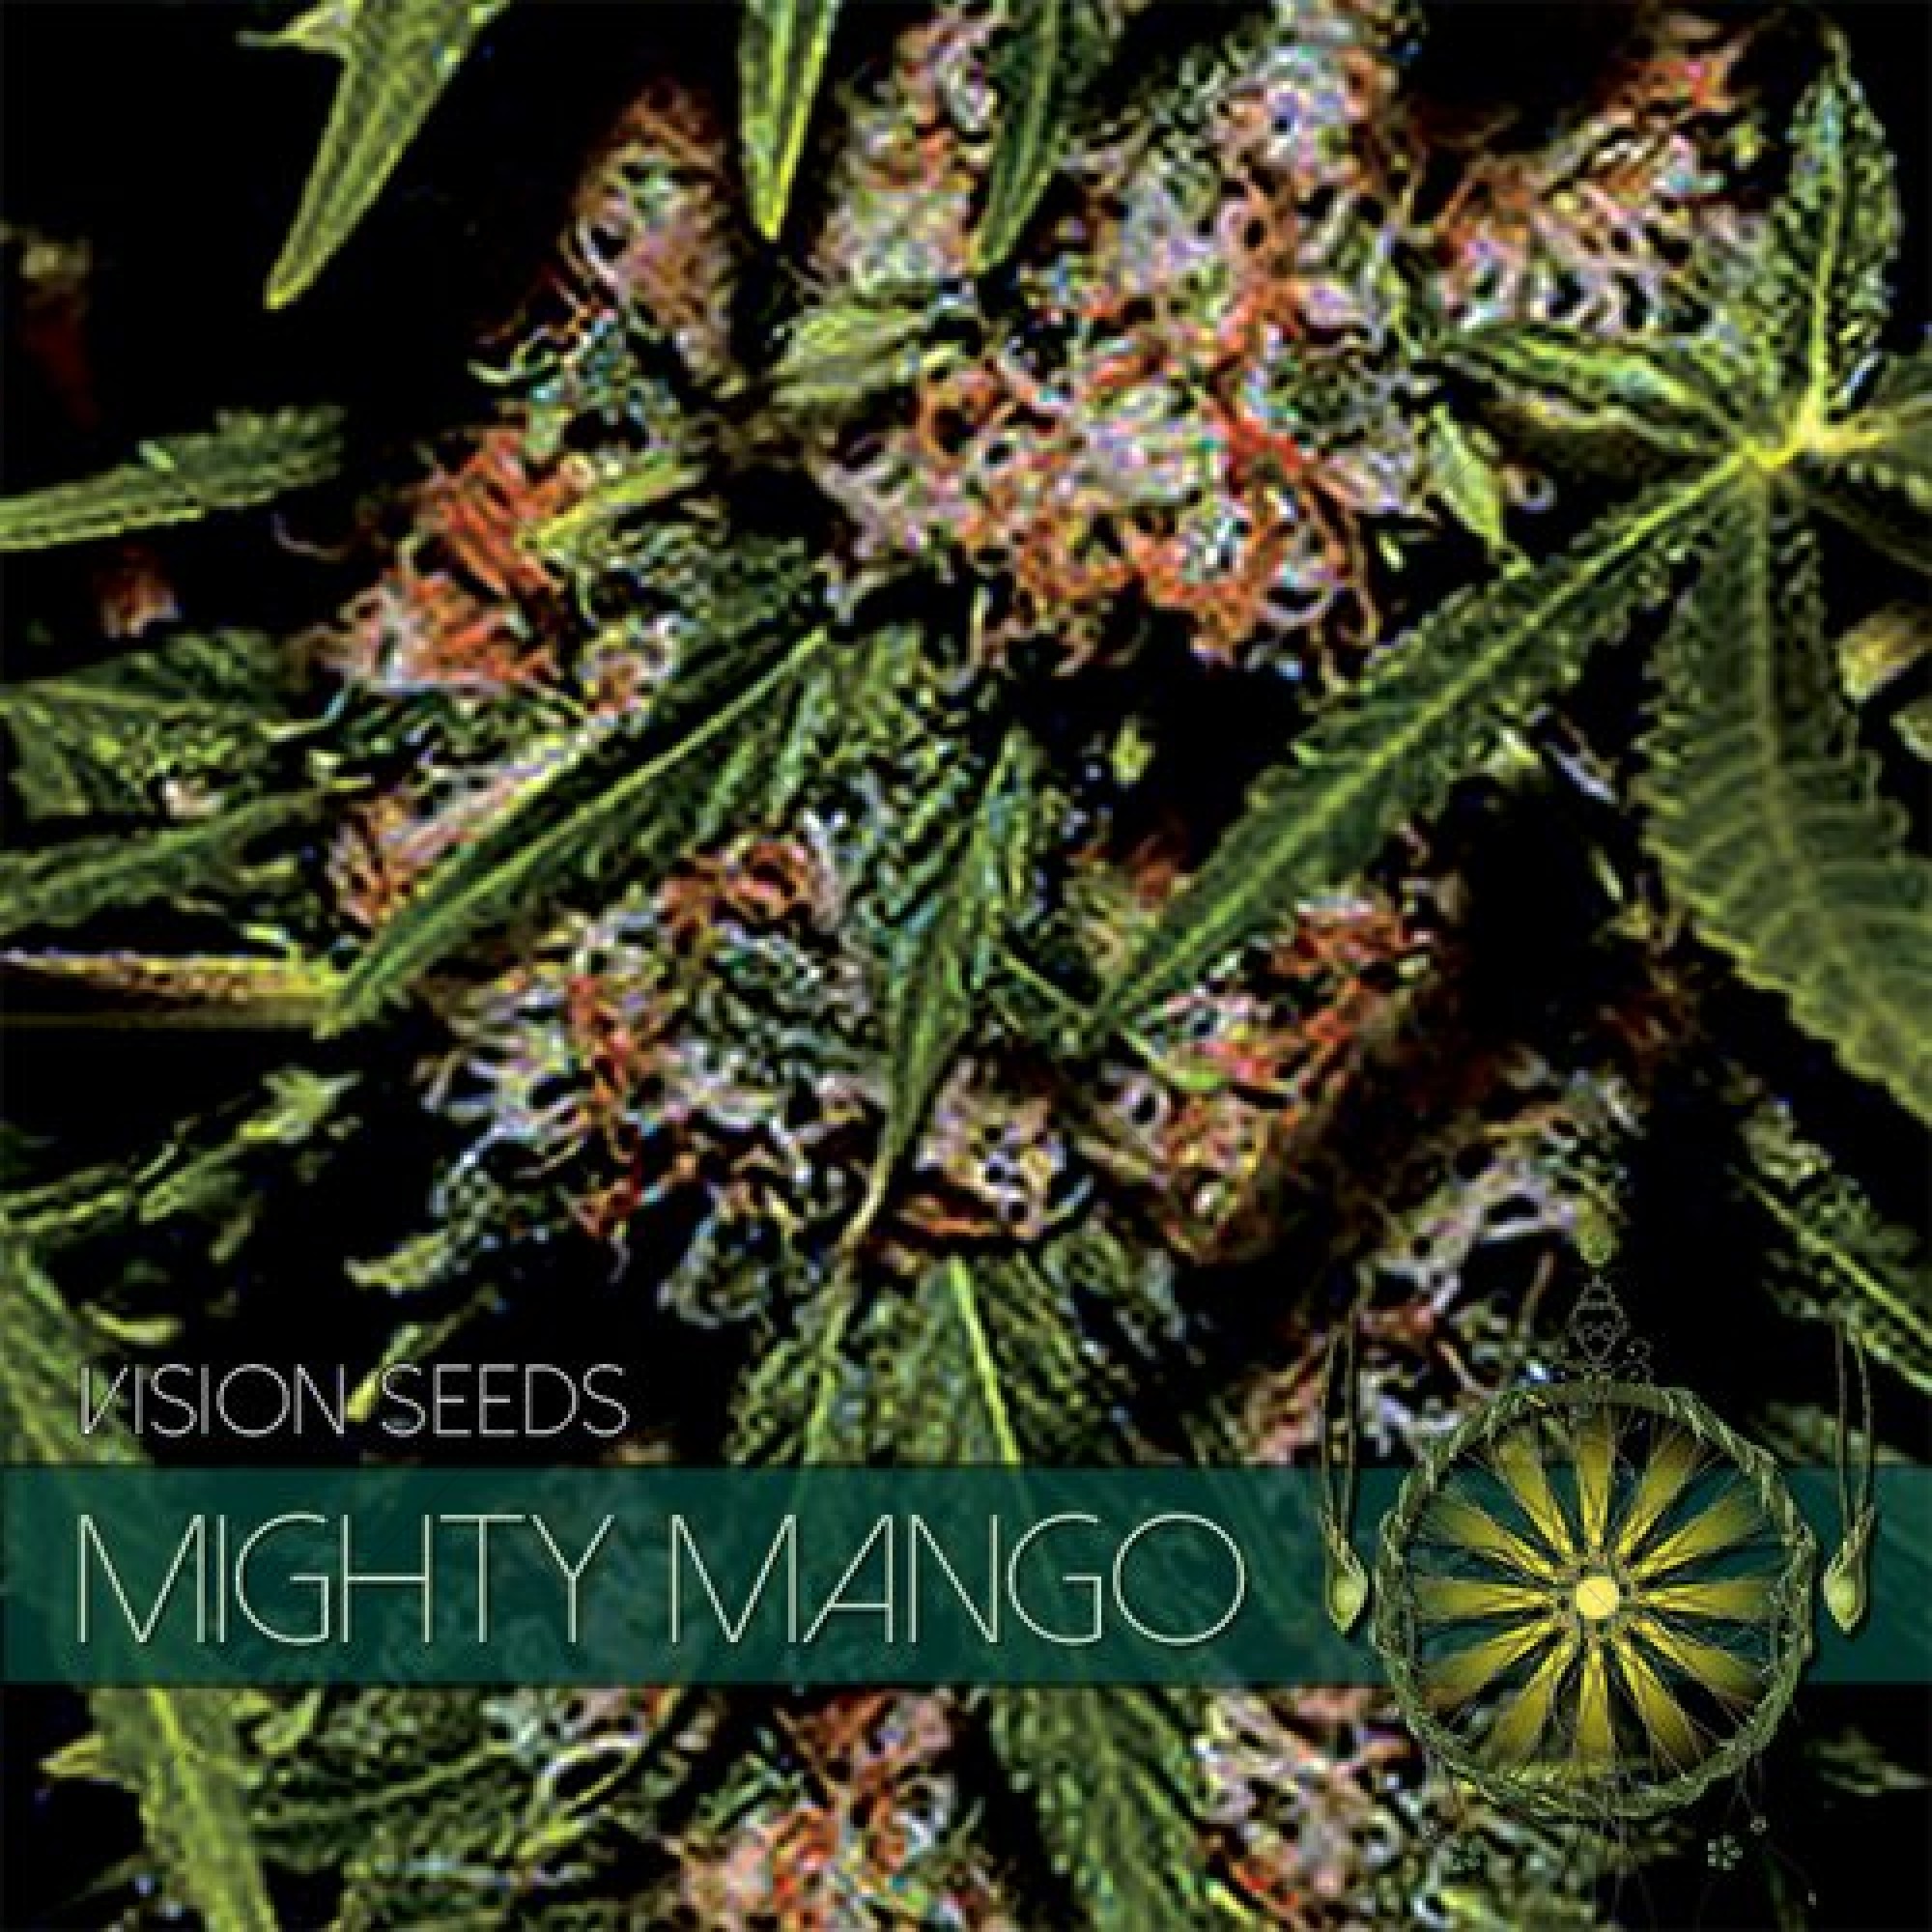 Mighty Mango Bud (Vision Seeds) féminisé